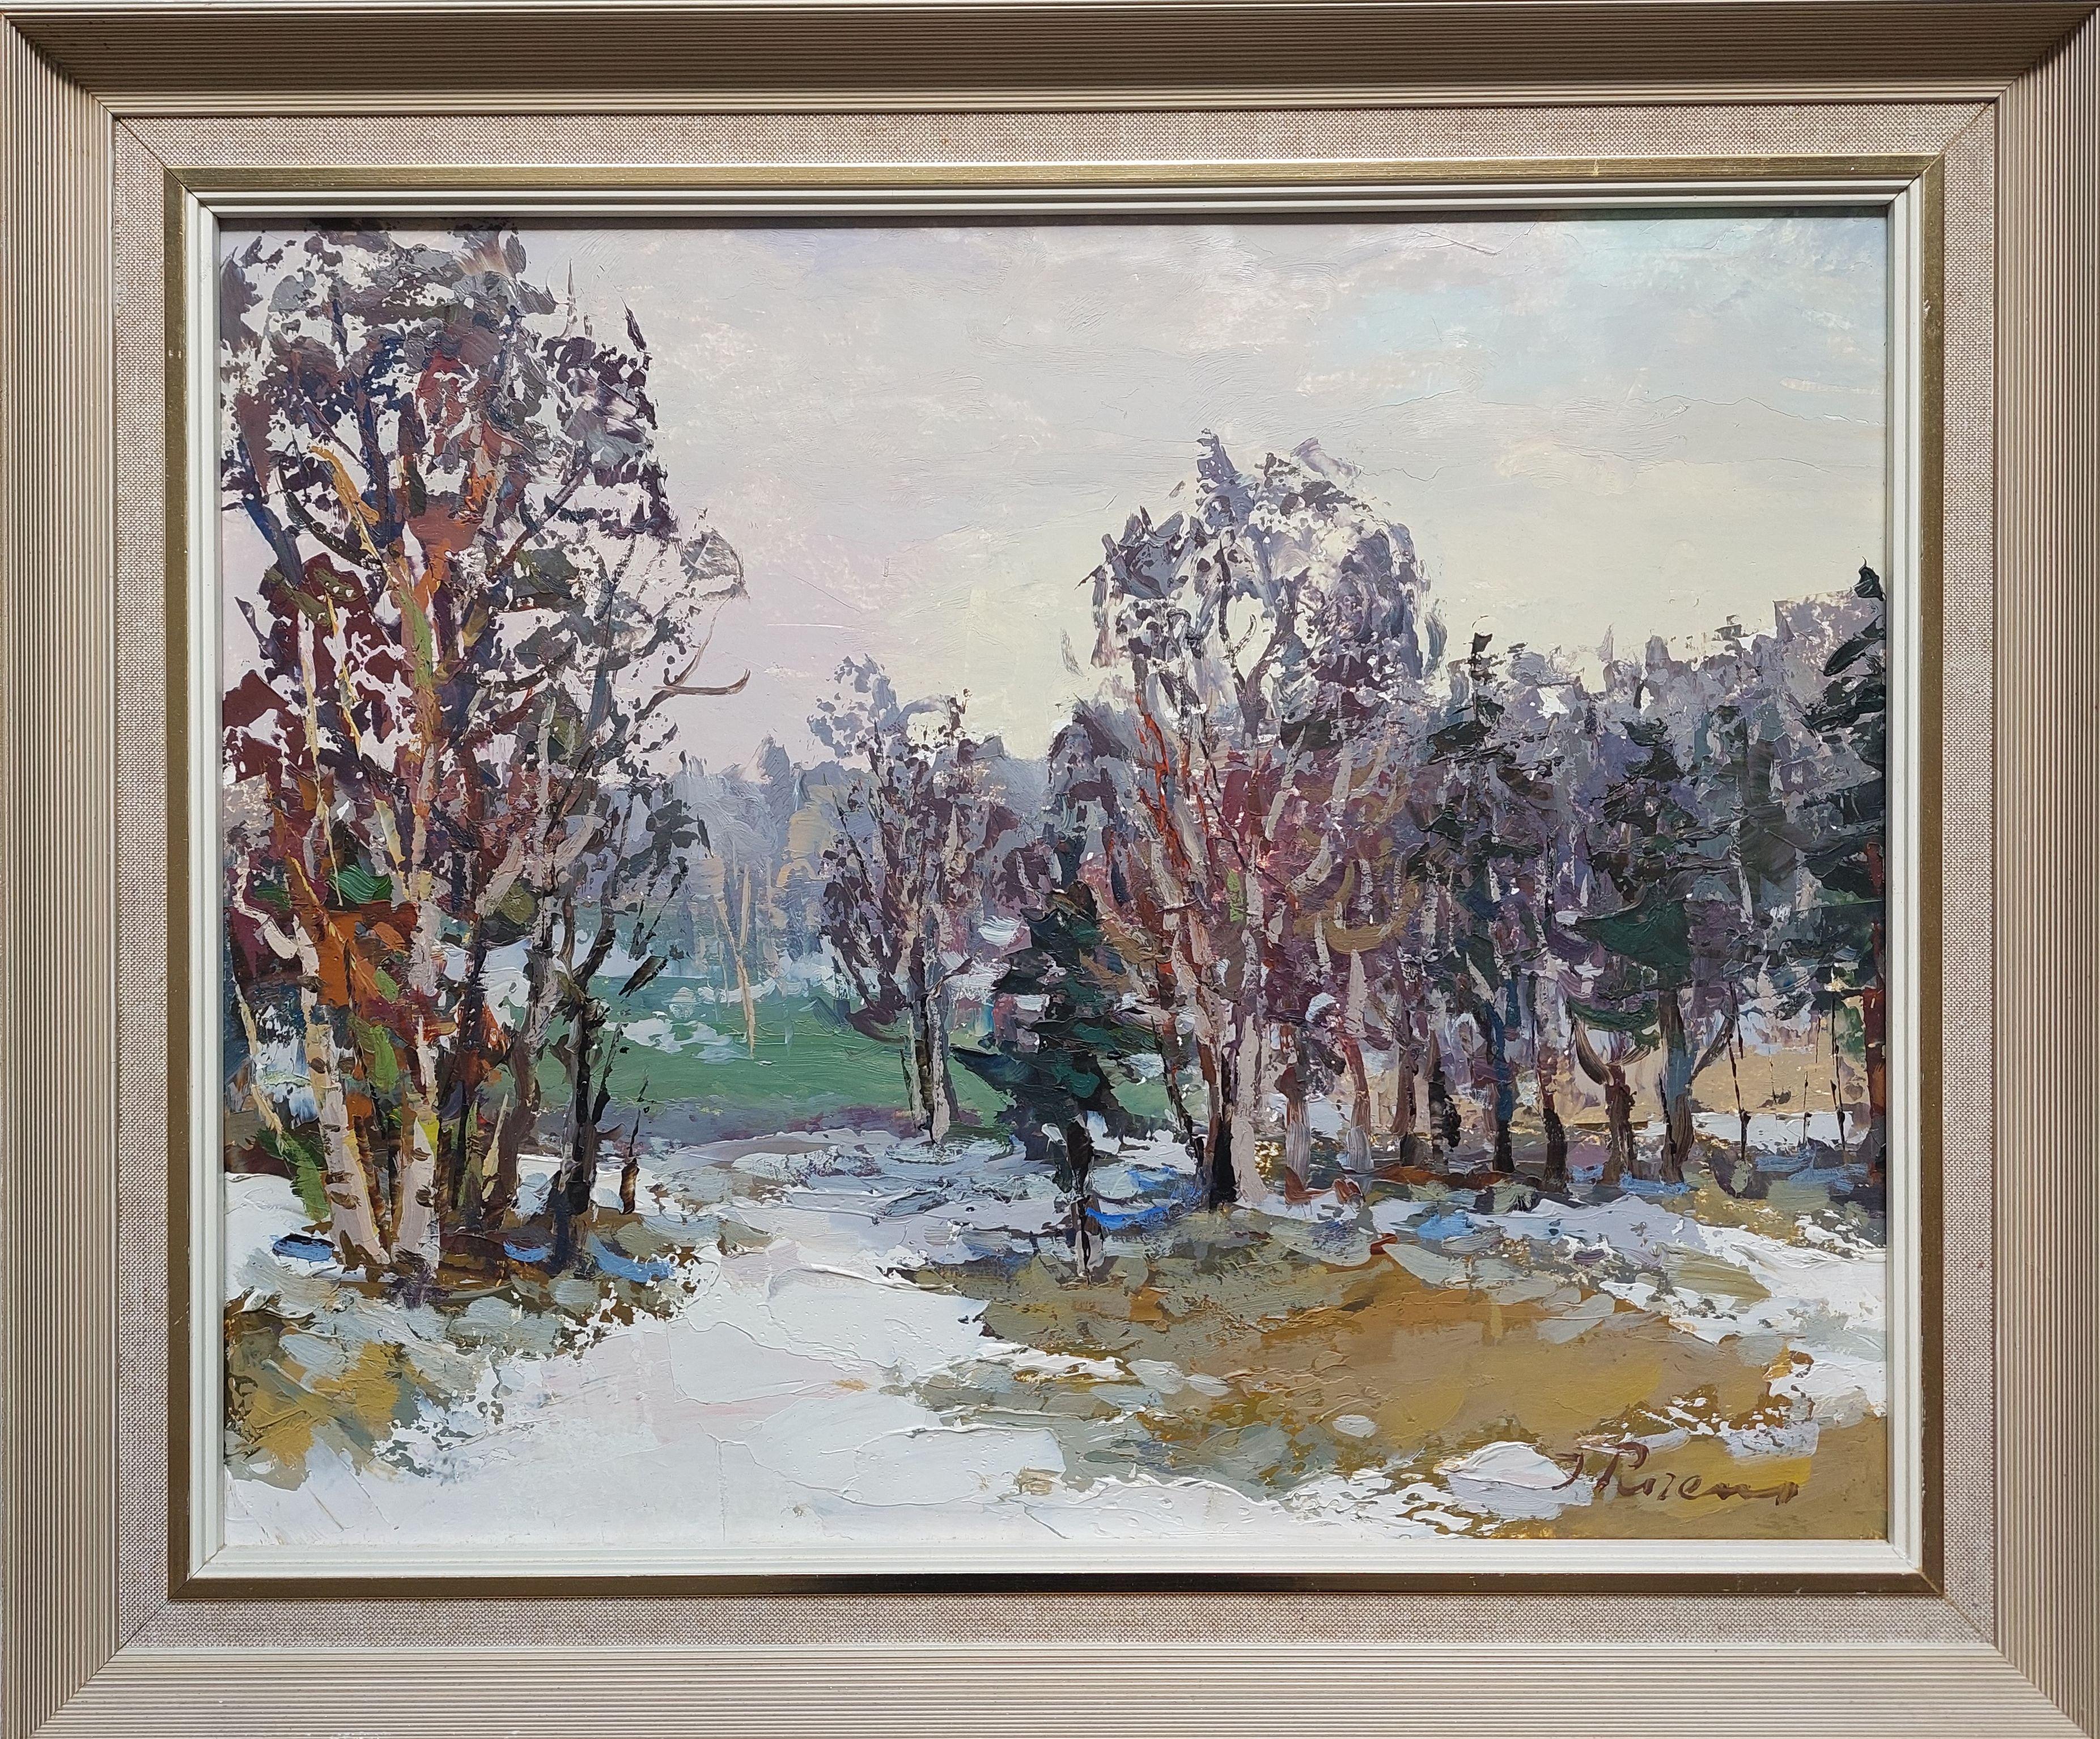 La première neige. 1989, huile sur carton, 32,5 x 40,5 cm - Réalisme Painting par Purens Indulis